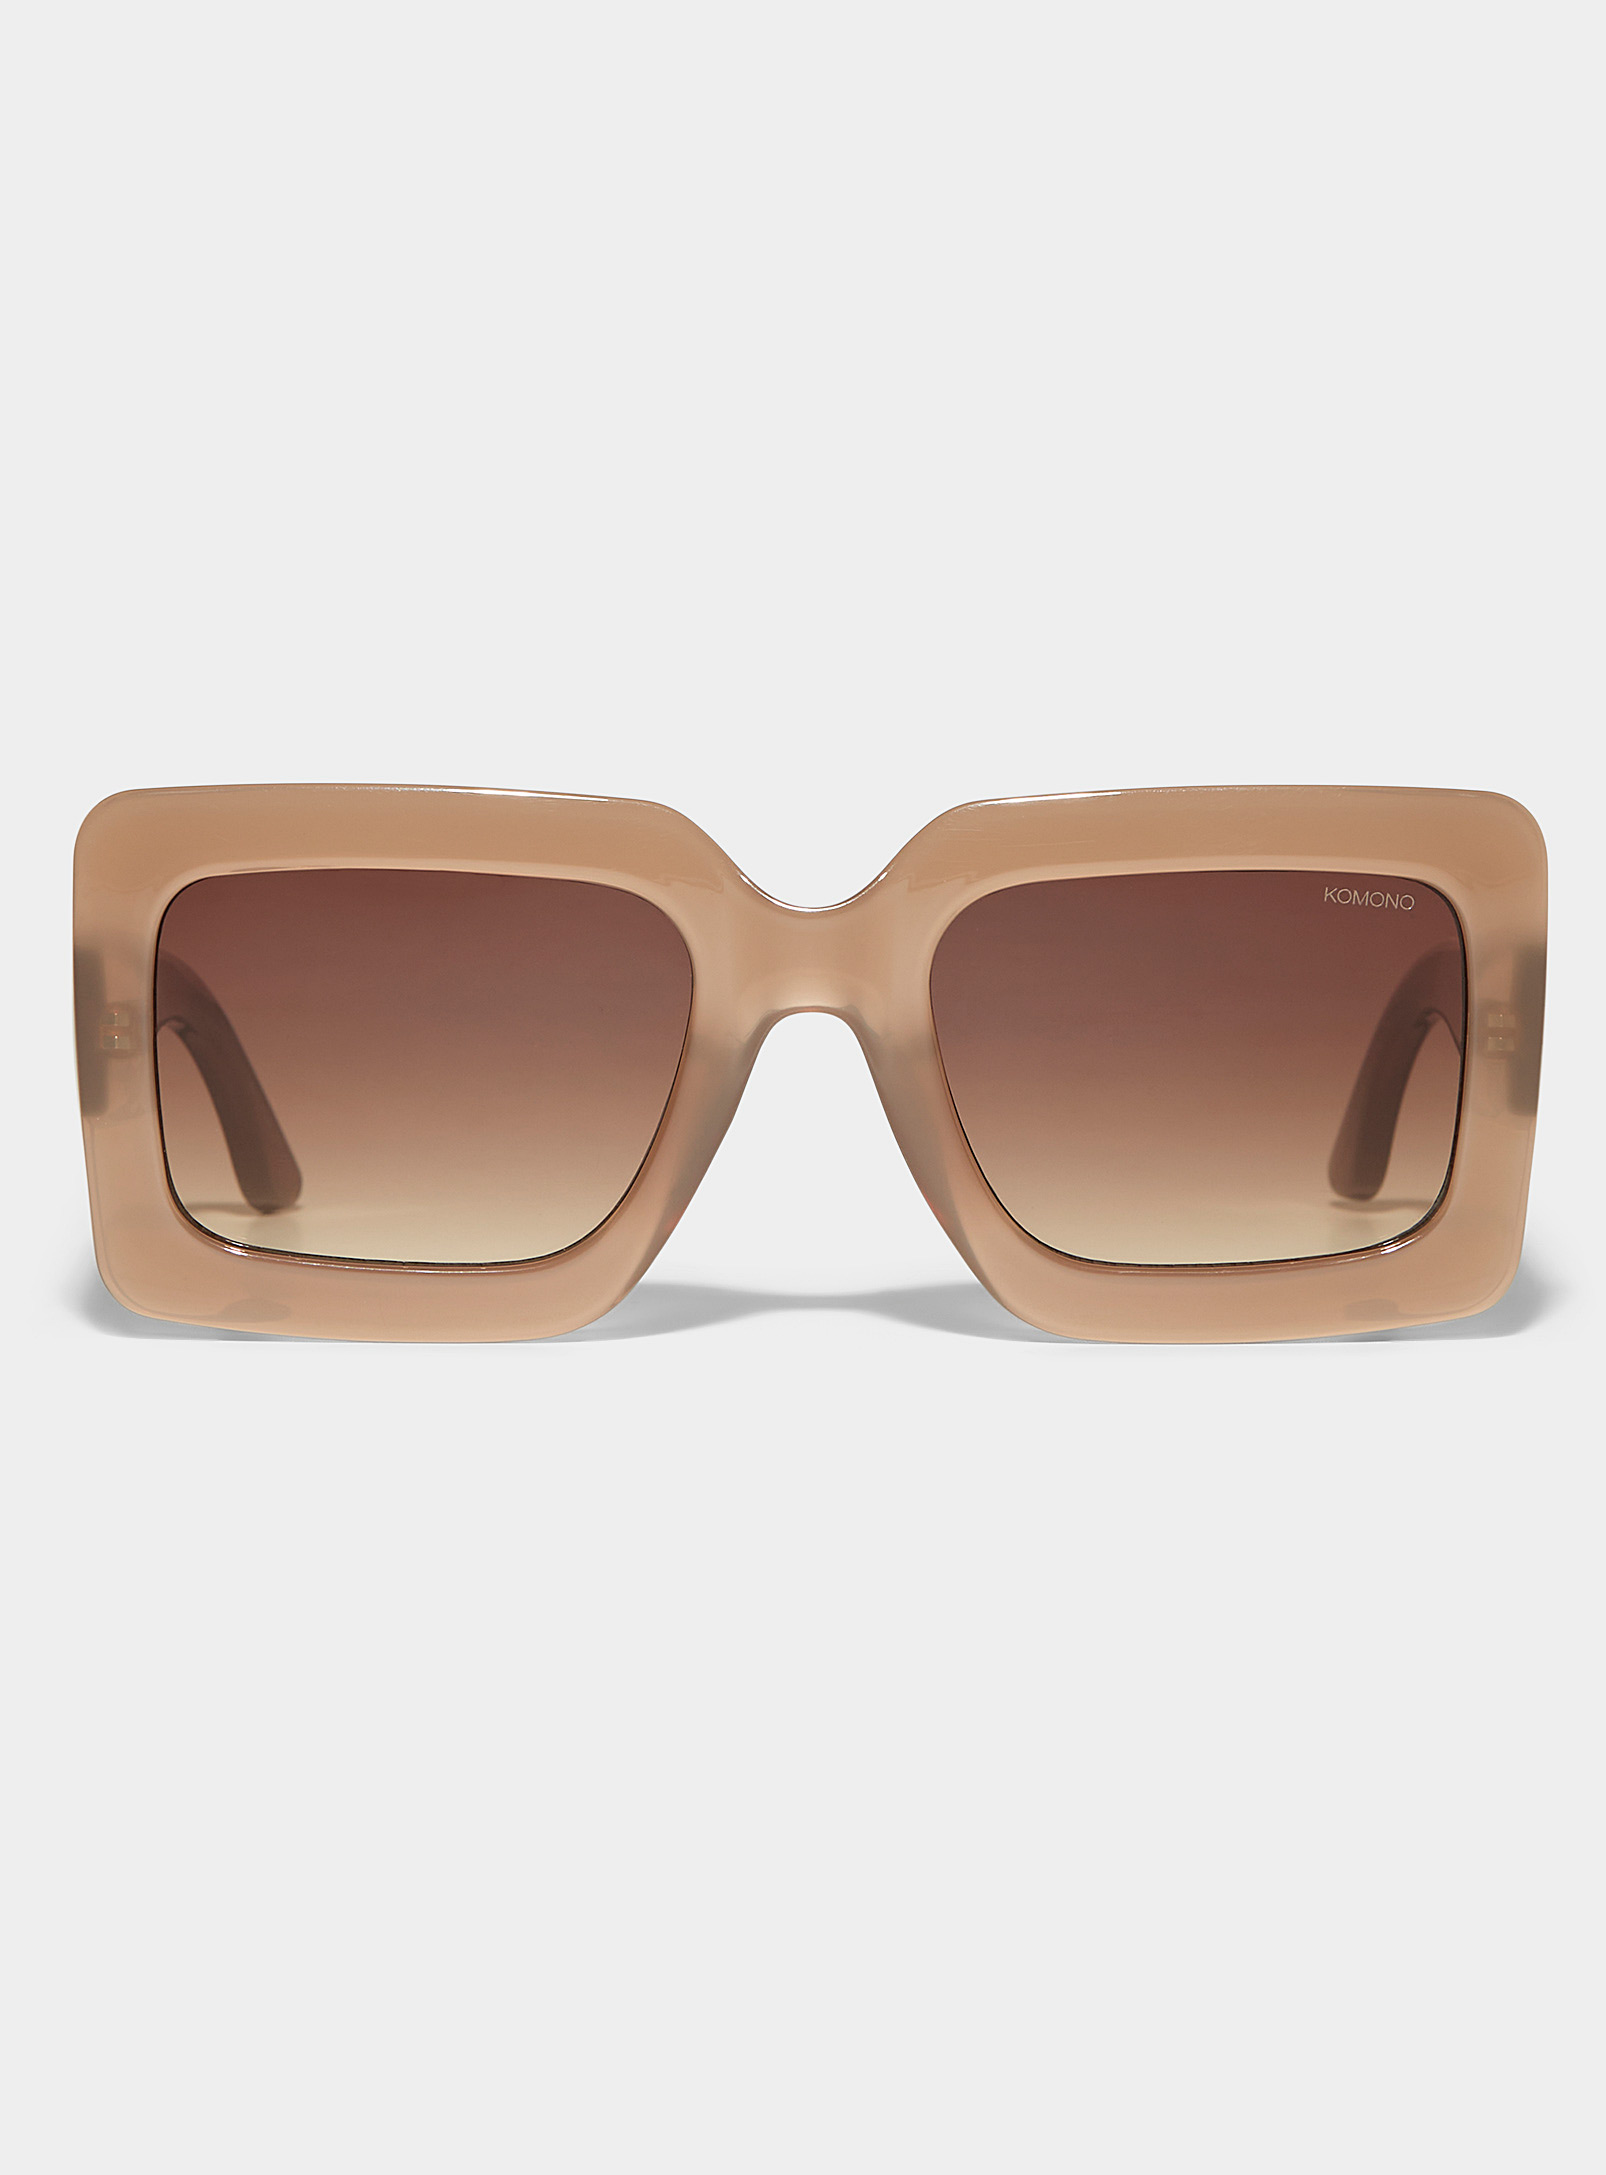 Komono Lana Square Sunglasses In Gold